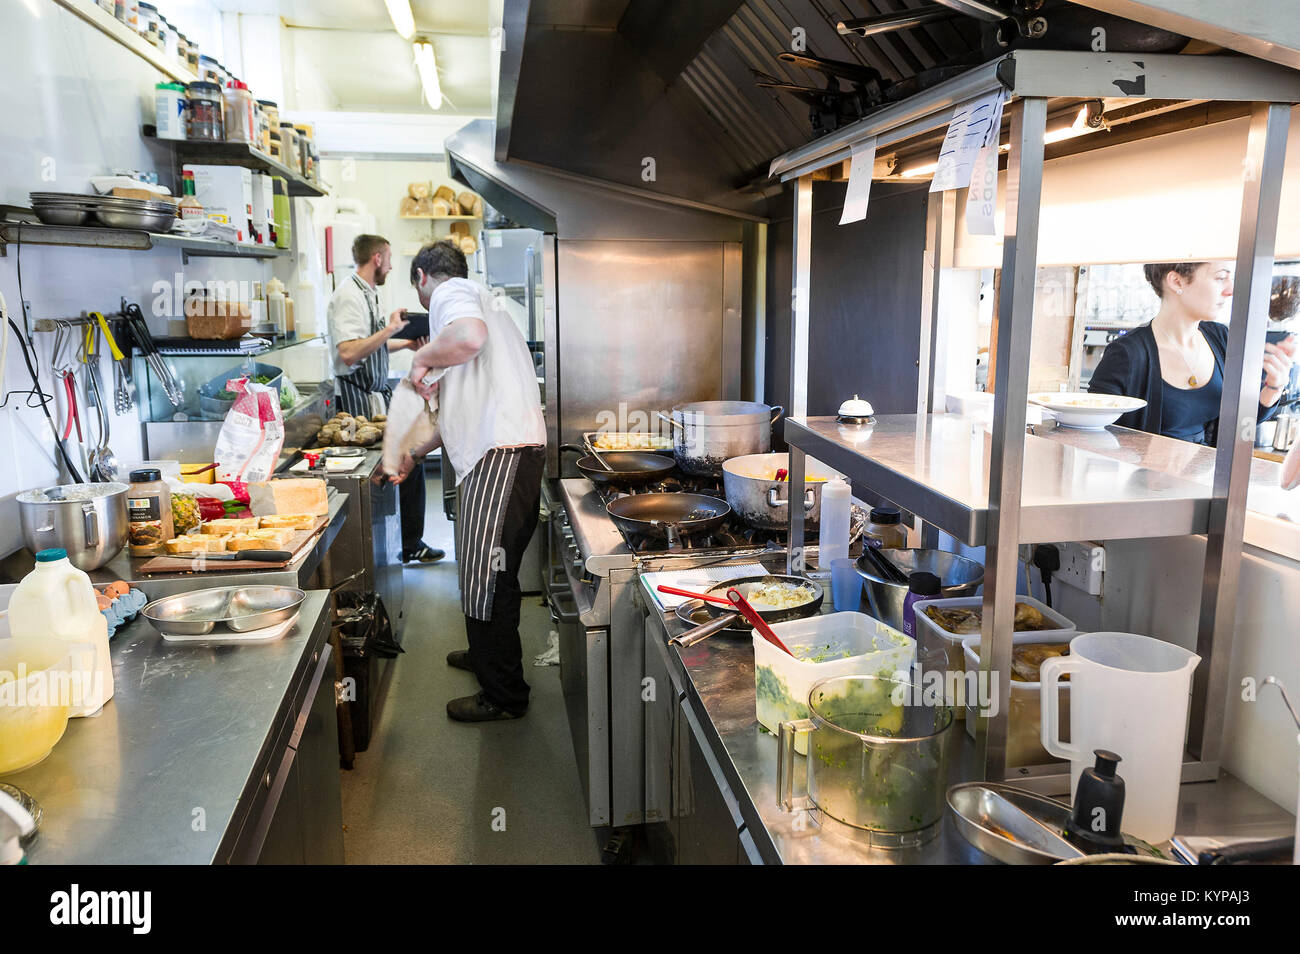 Food preparation - chefs working in a restaurant kitchen. Stock Photo